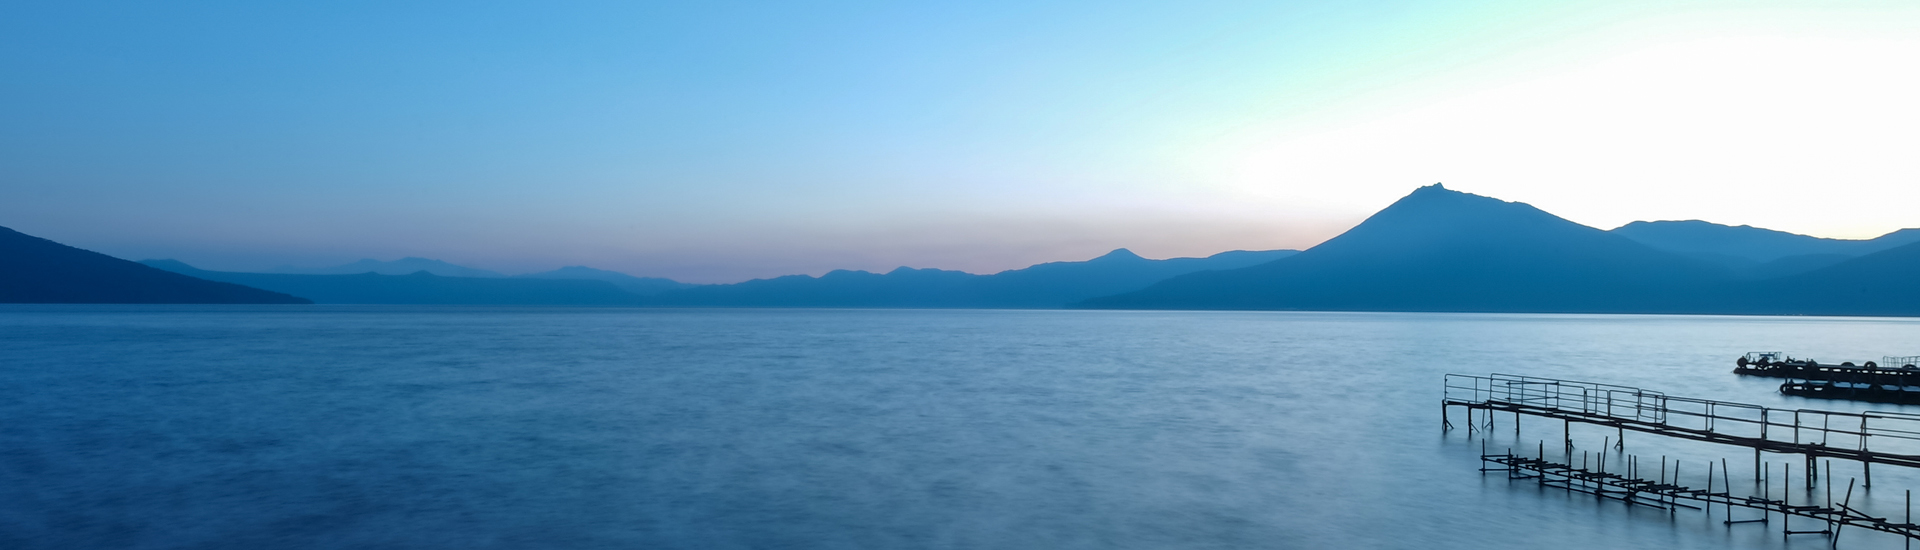 Mar azul com montanhas no horizonte e um deque à direita da foto.